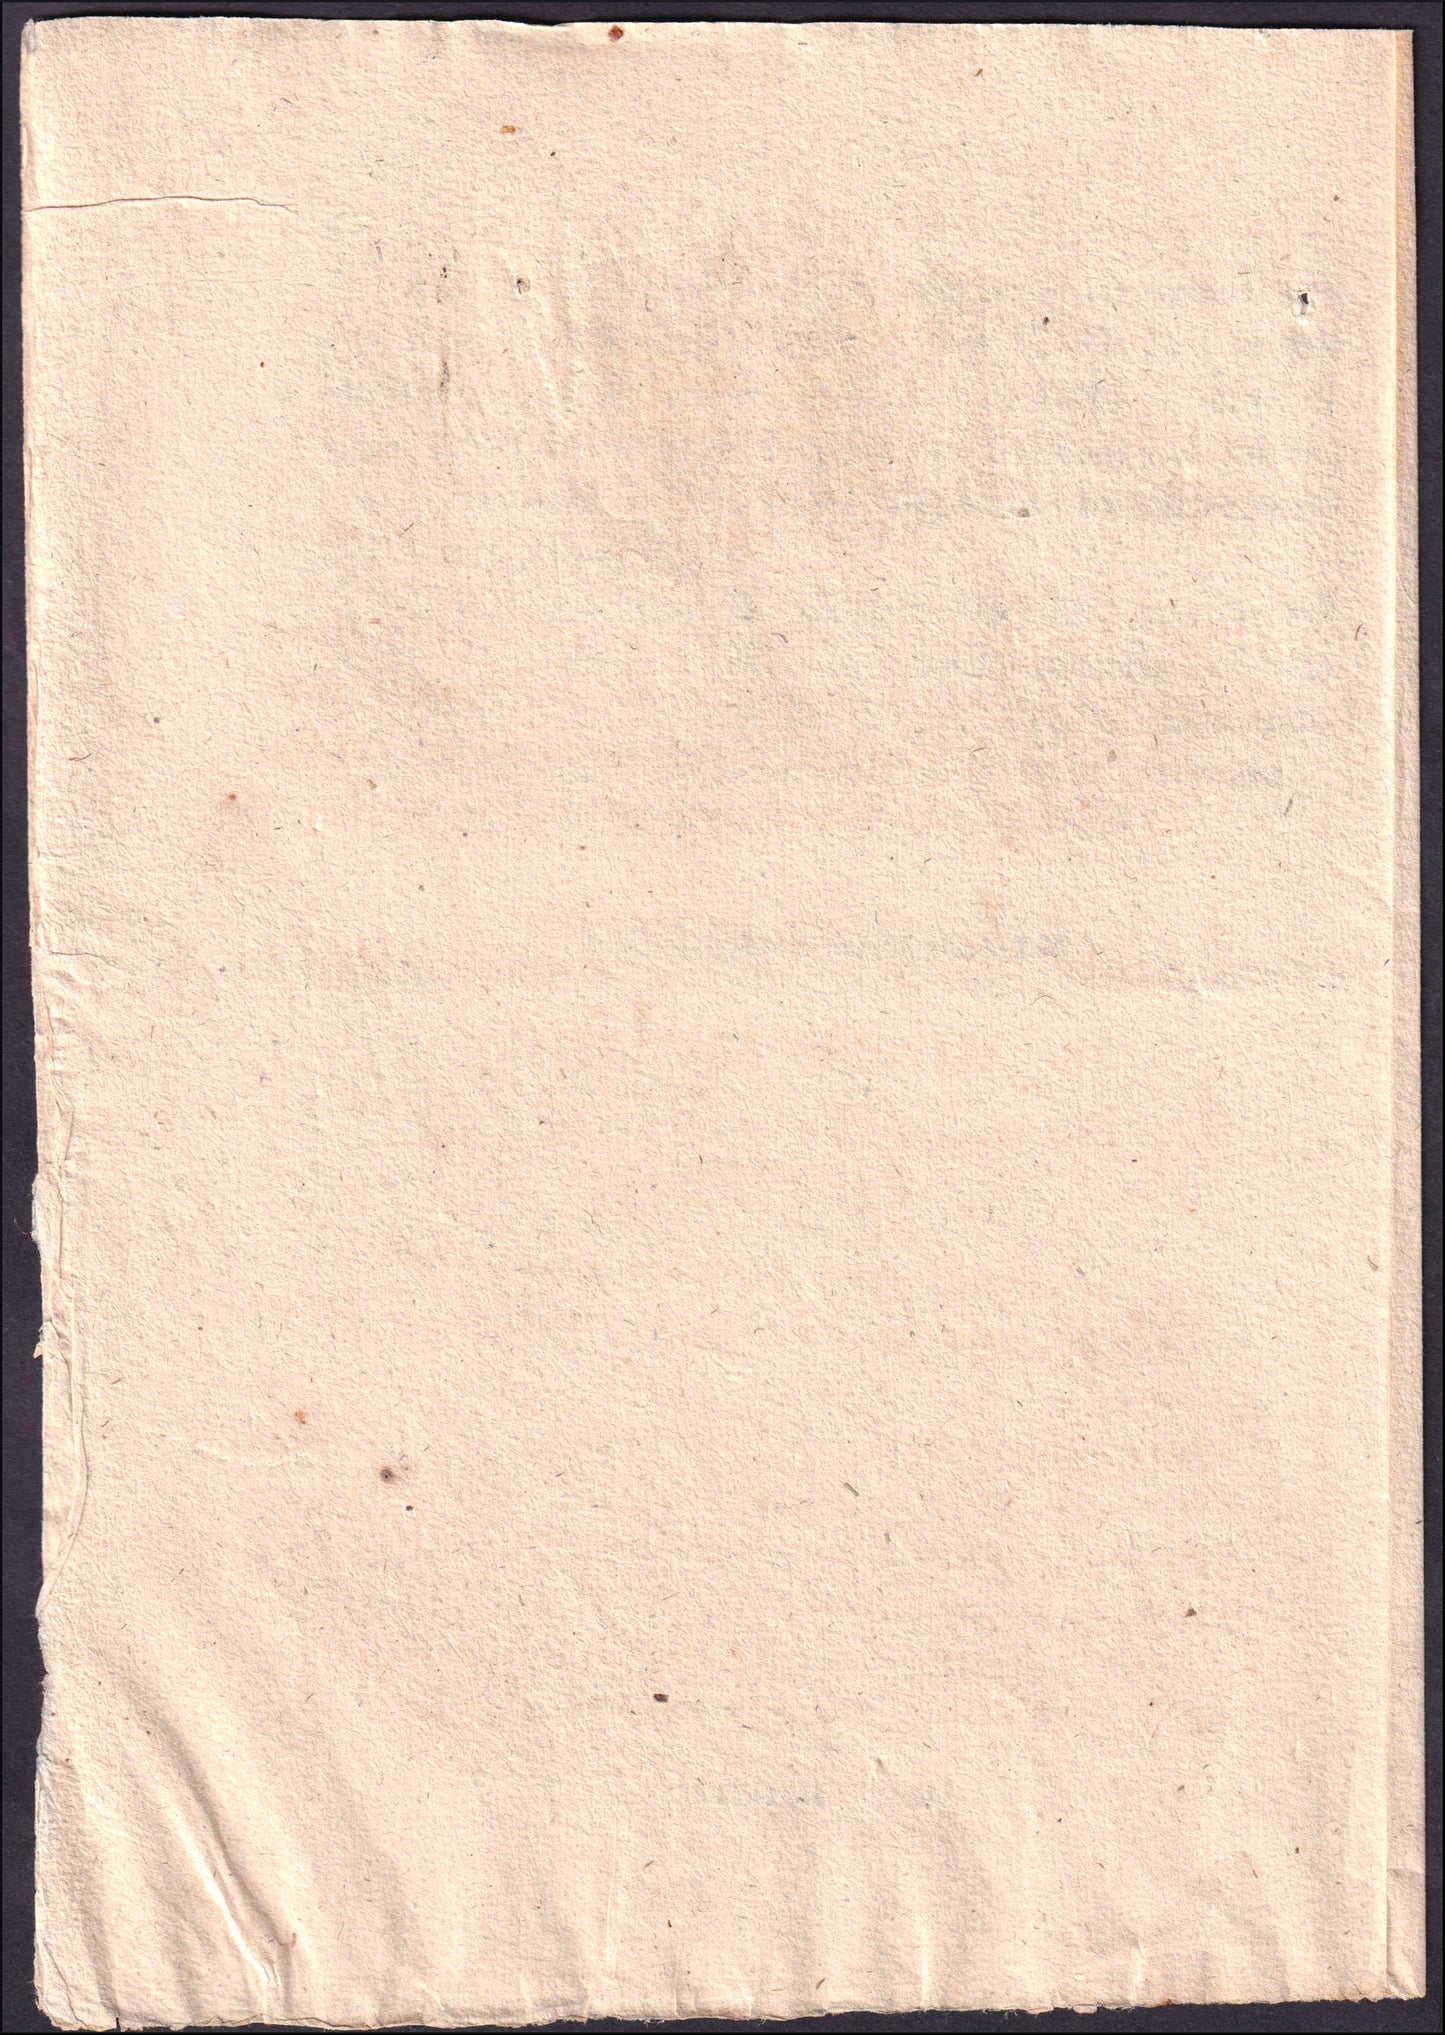 VEII118 - 1866 (2 dicembre) Regio Decreto n. 3397 col quale si prescrive la nuova forma dei francobolli postali da centesimi 20, e l'epoca in cui saranno messi in corso.